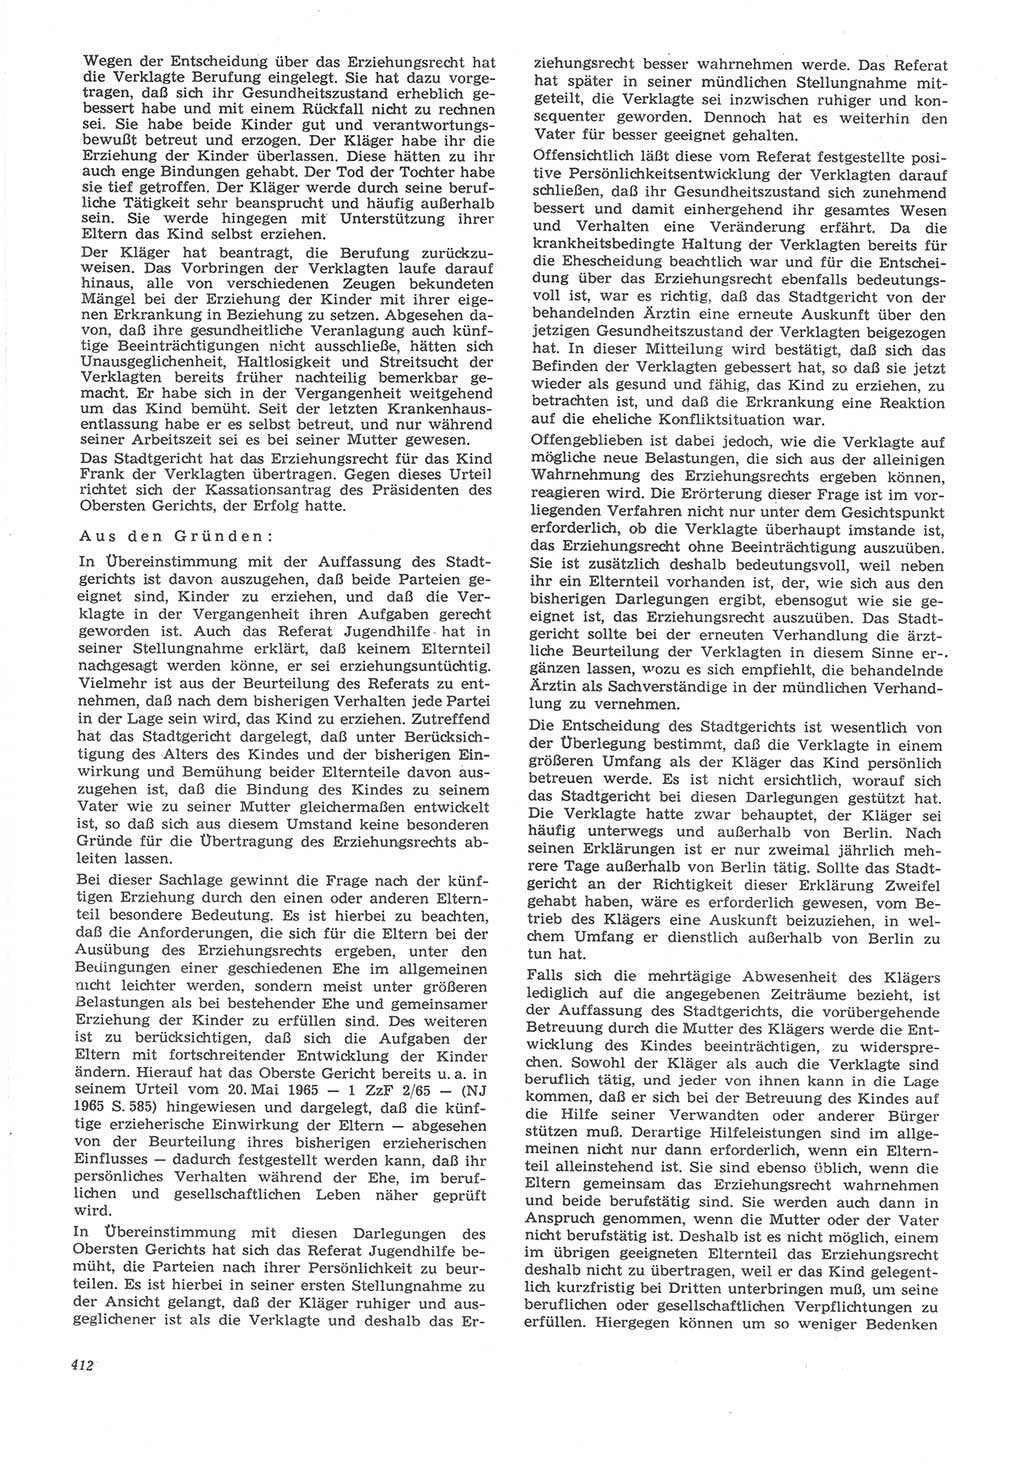 Neue Justiz (NJ), Zeitschrift für Recht und Rechtswissenschaft [Deutsche Demokratische Republik (DDR)], 22. Jahrgang 1968, Seite 412 (NJ DDR 1968, S. 412)